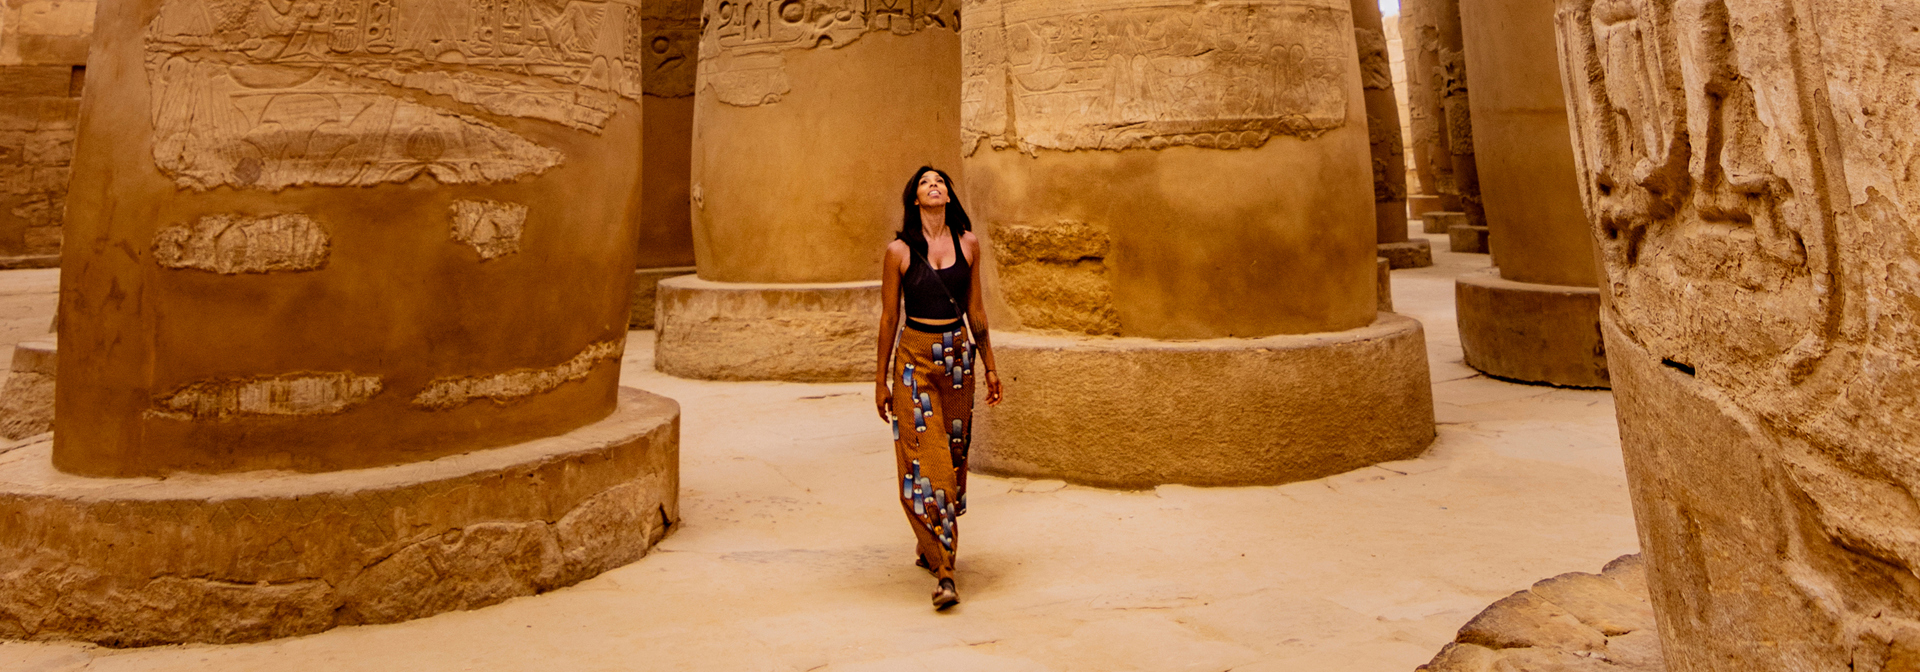 egypten - Luxor_karnak tempel_02